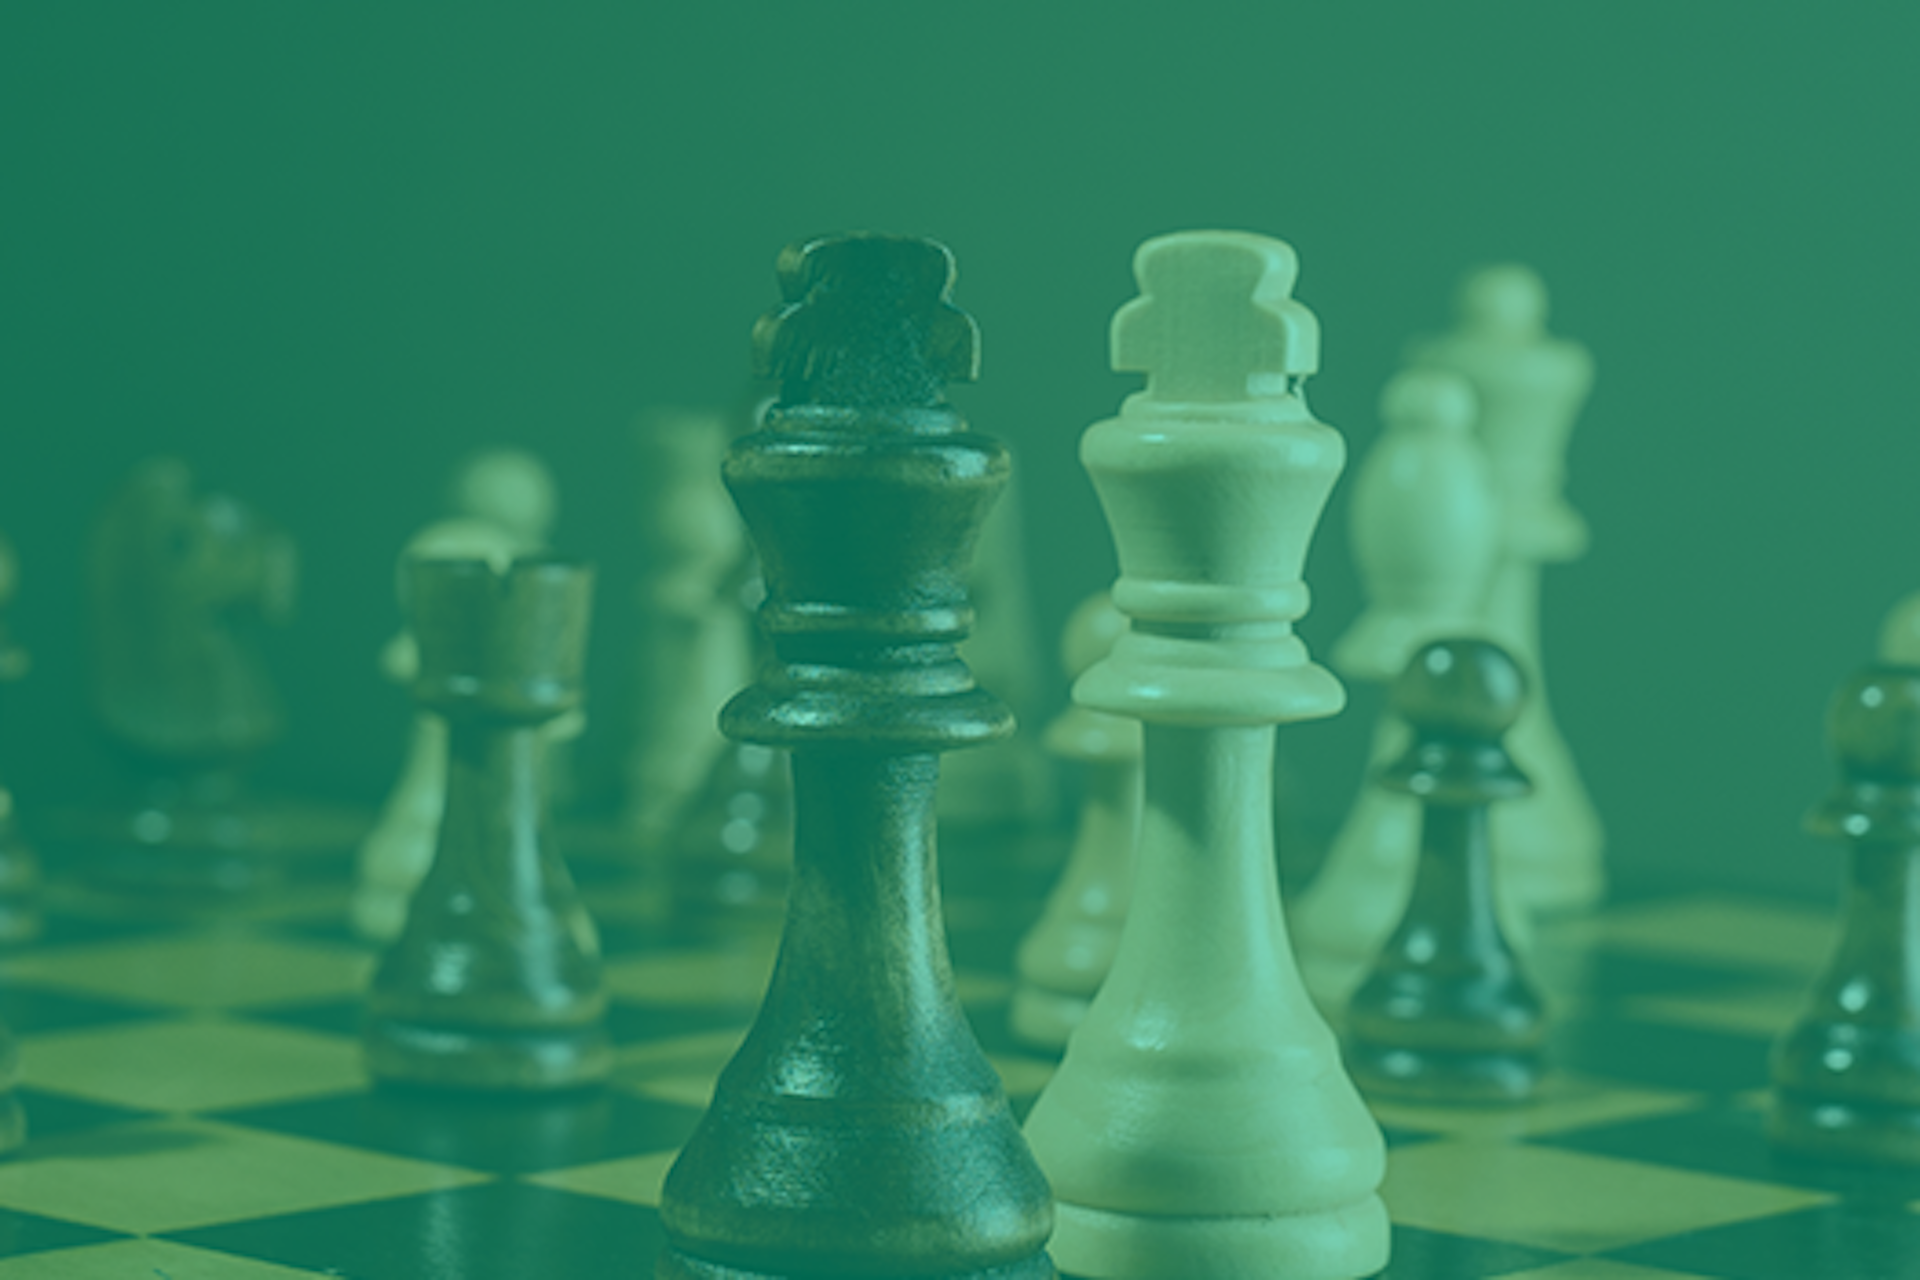 Bild von Schachfiguren auf einem Schachbrett mit grünem Filter darüber